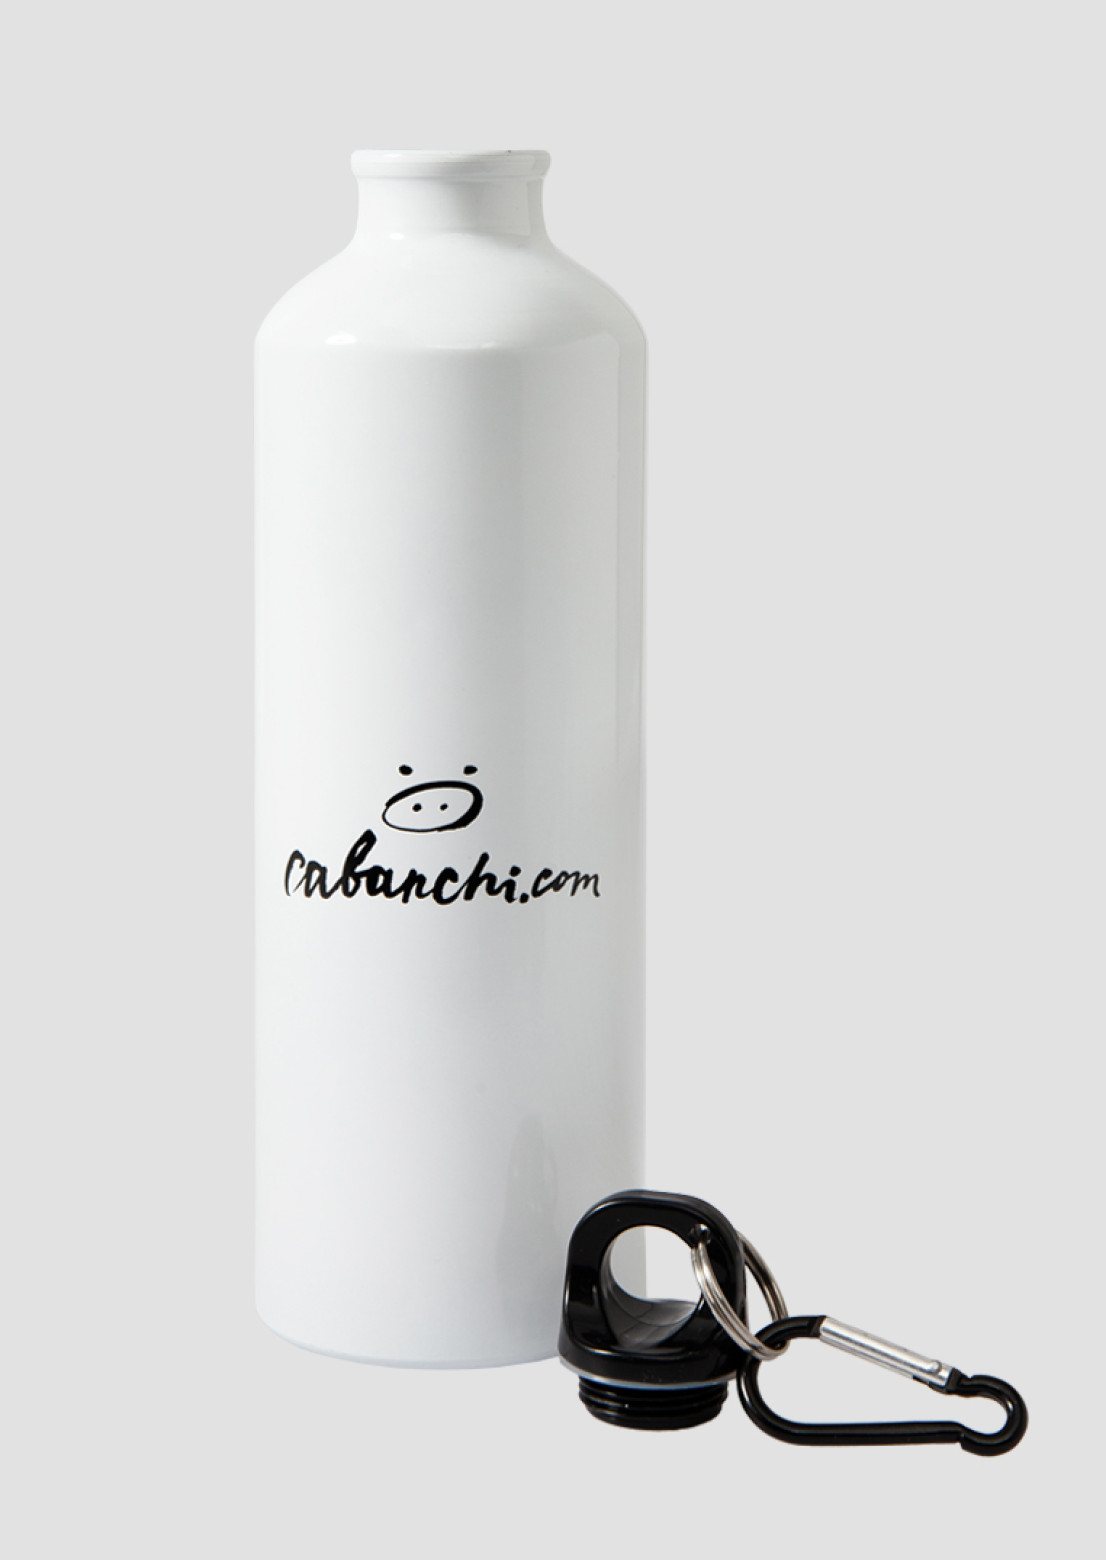 Cabanchicom Bottle